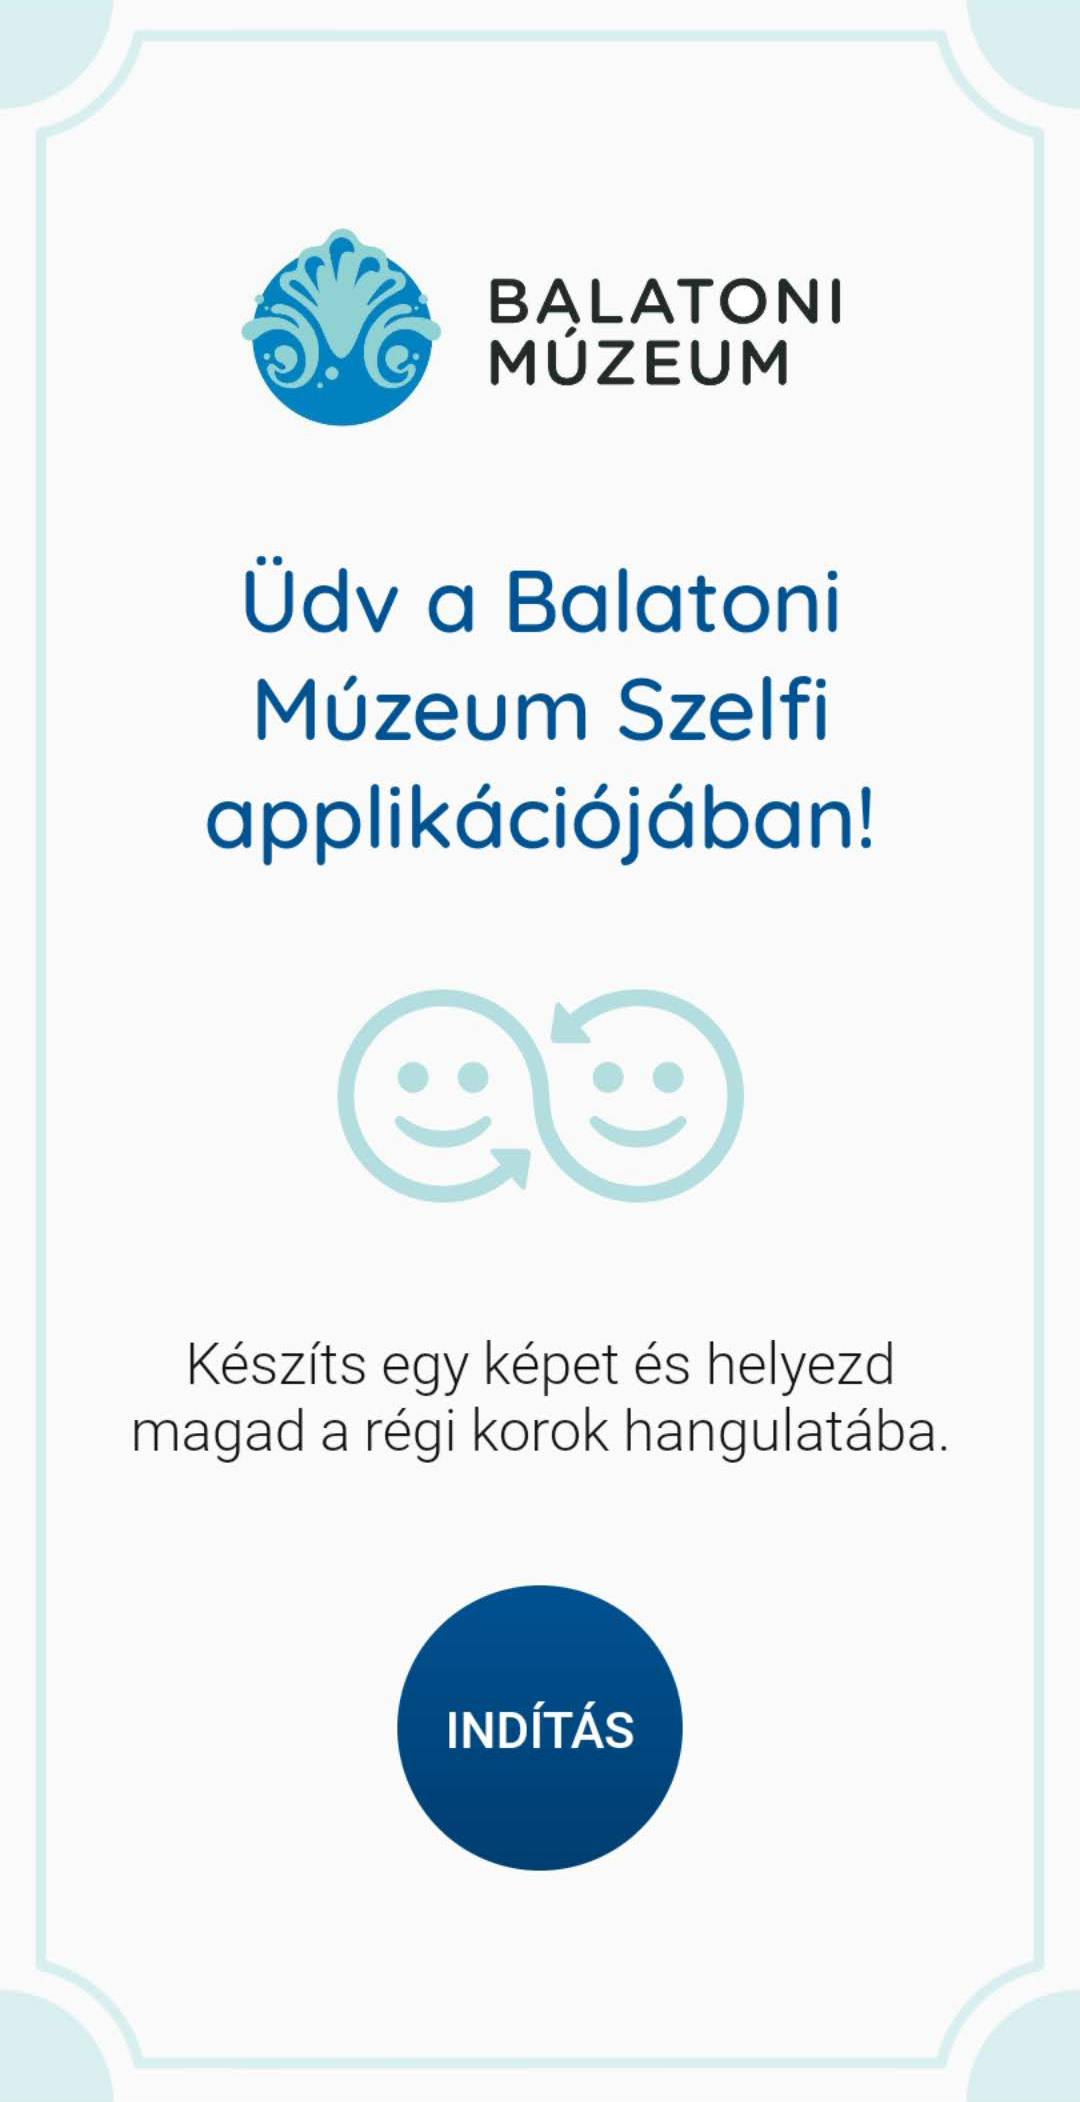 Screenshot_20200420-110732_Balatoni Mzeum Szelfi